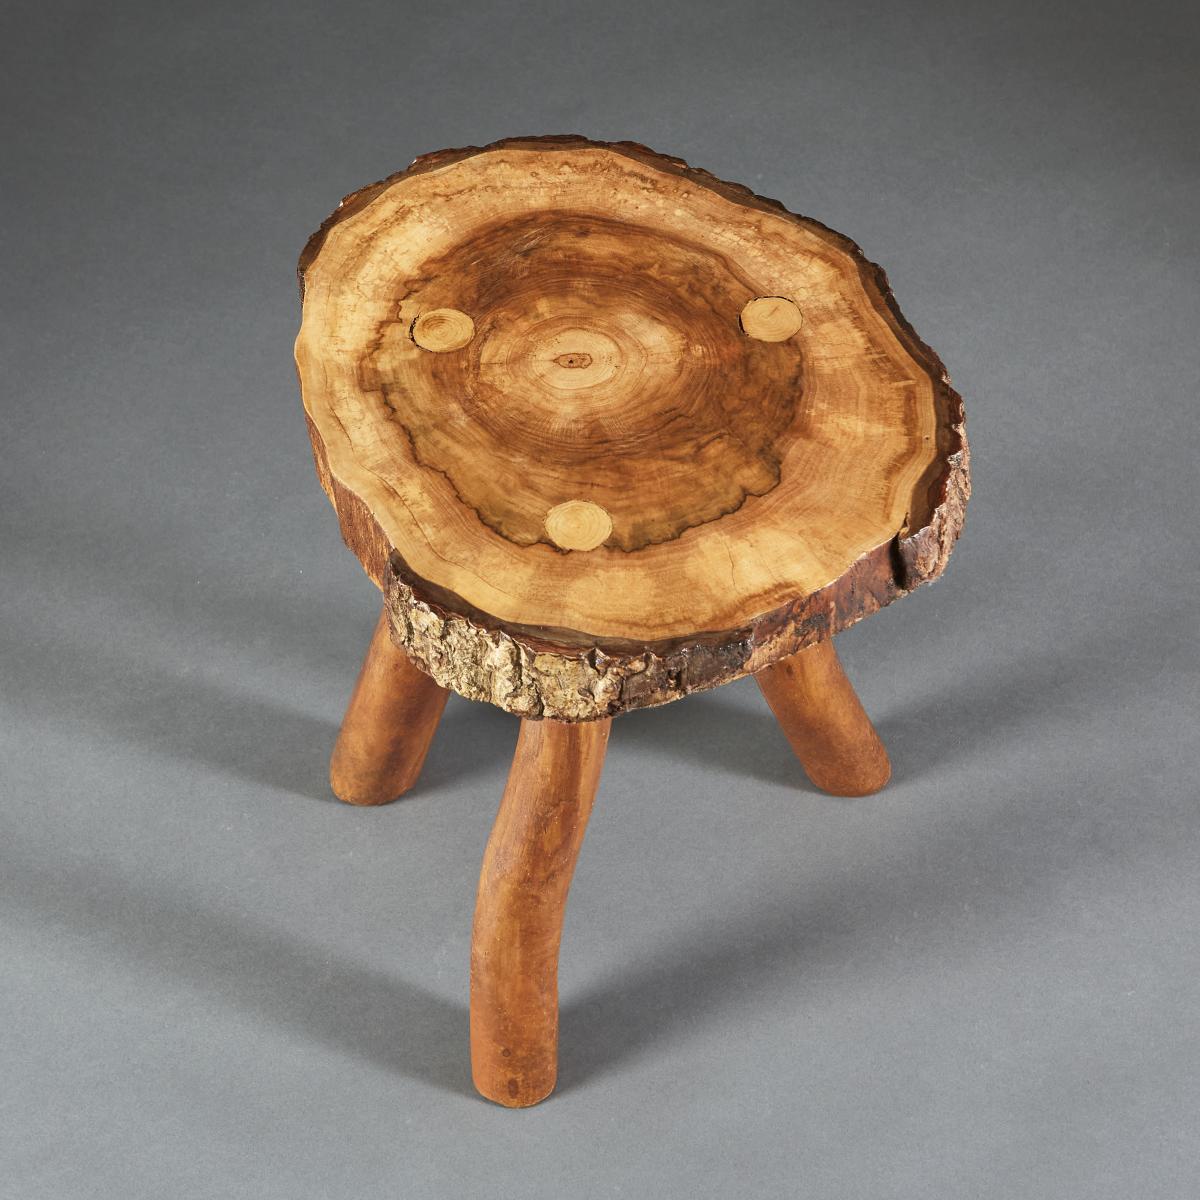 Walnut Root Wood Tripod Table